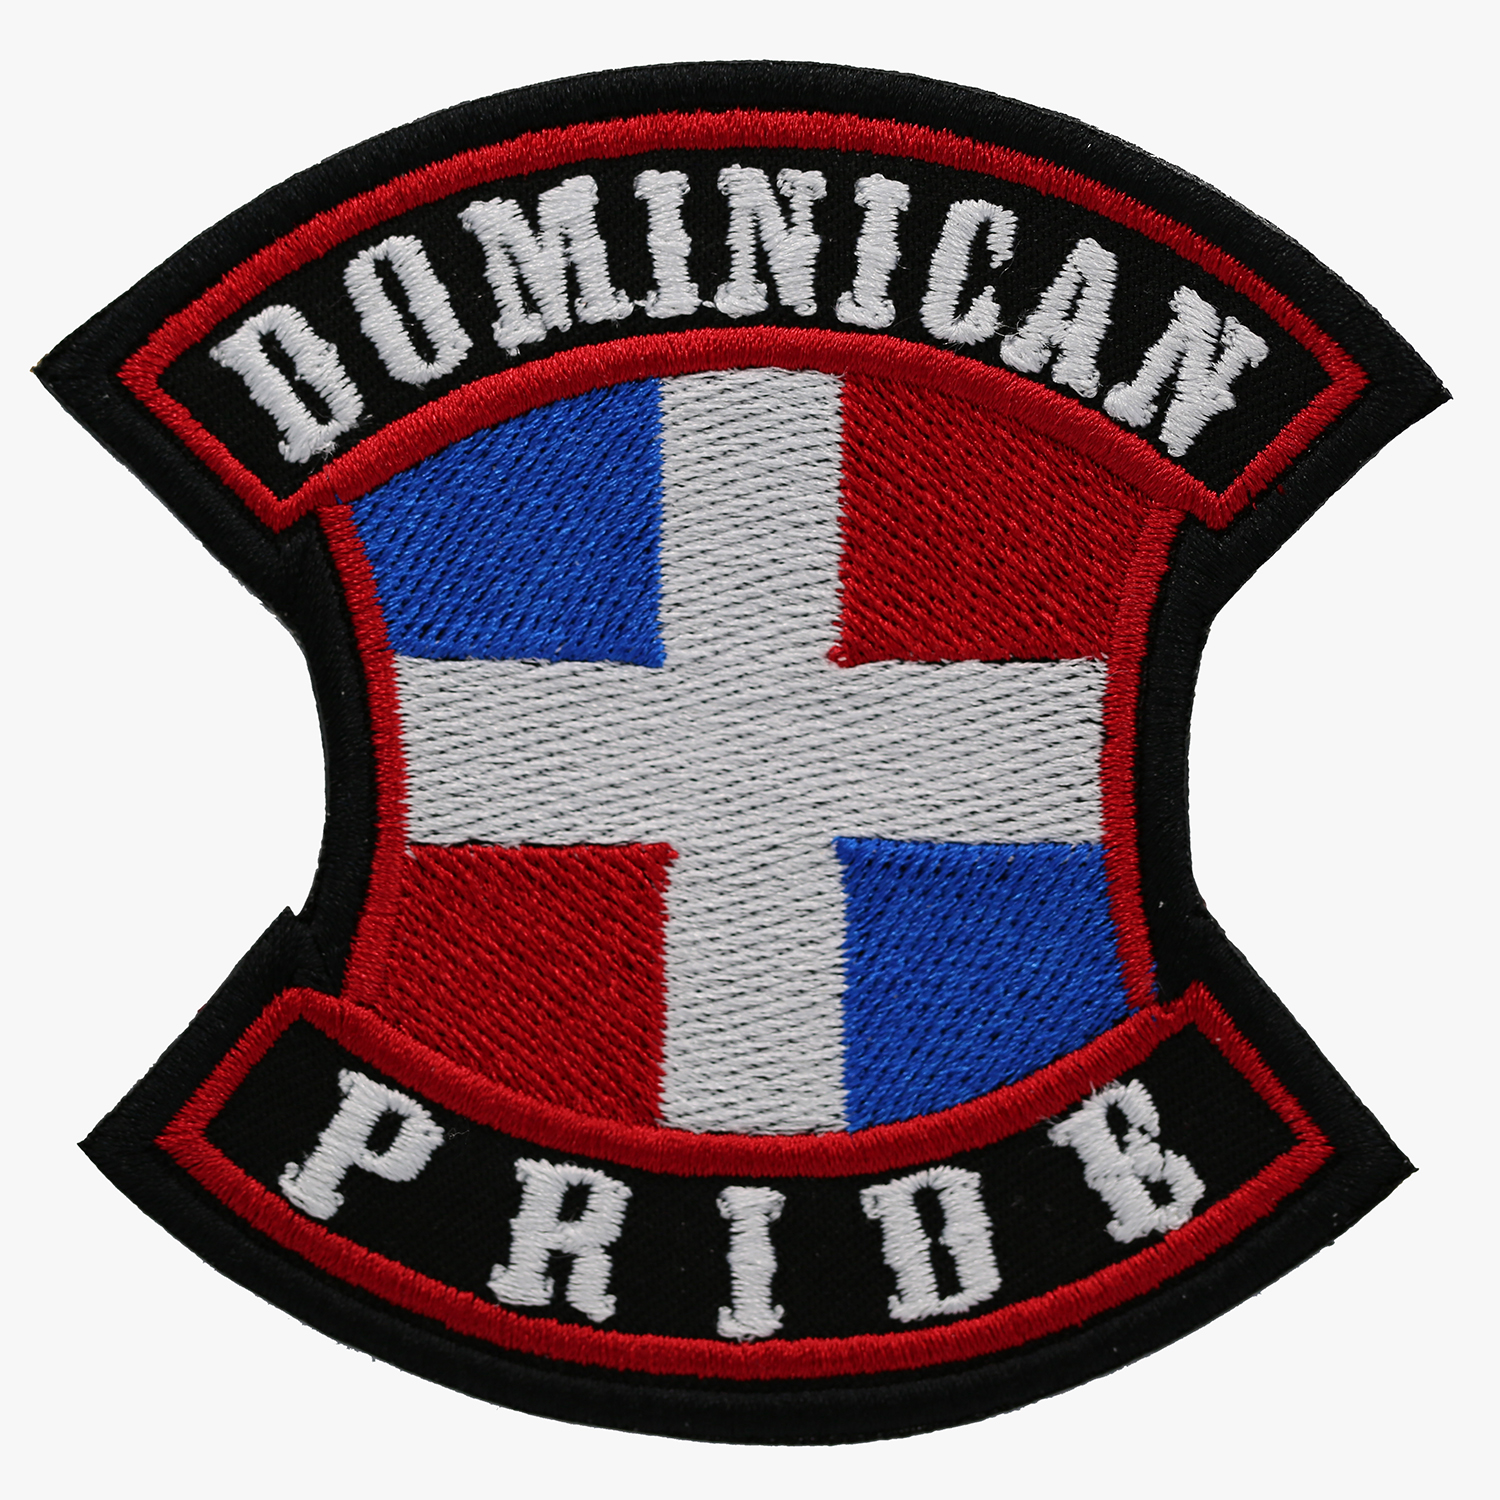 DOMINICAN PRIDE